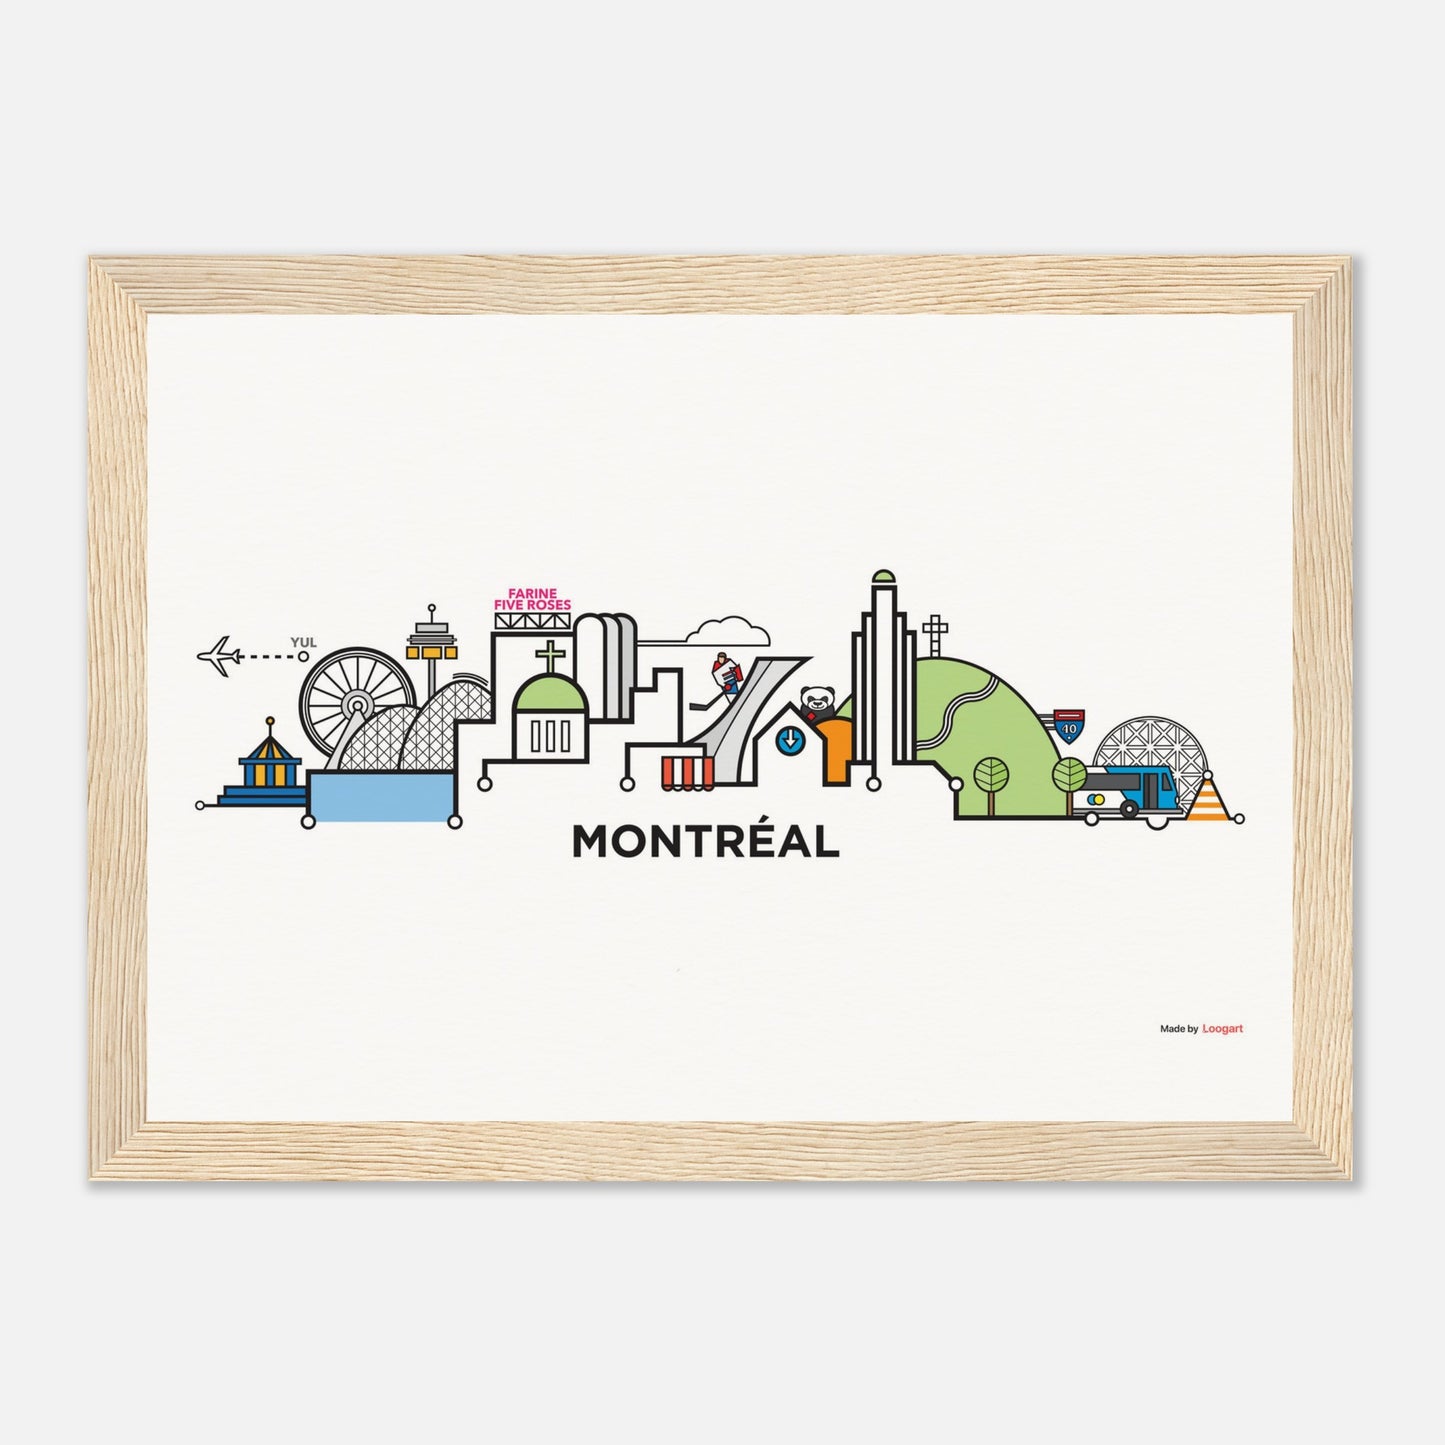 Montreal CityLine by Loogart